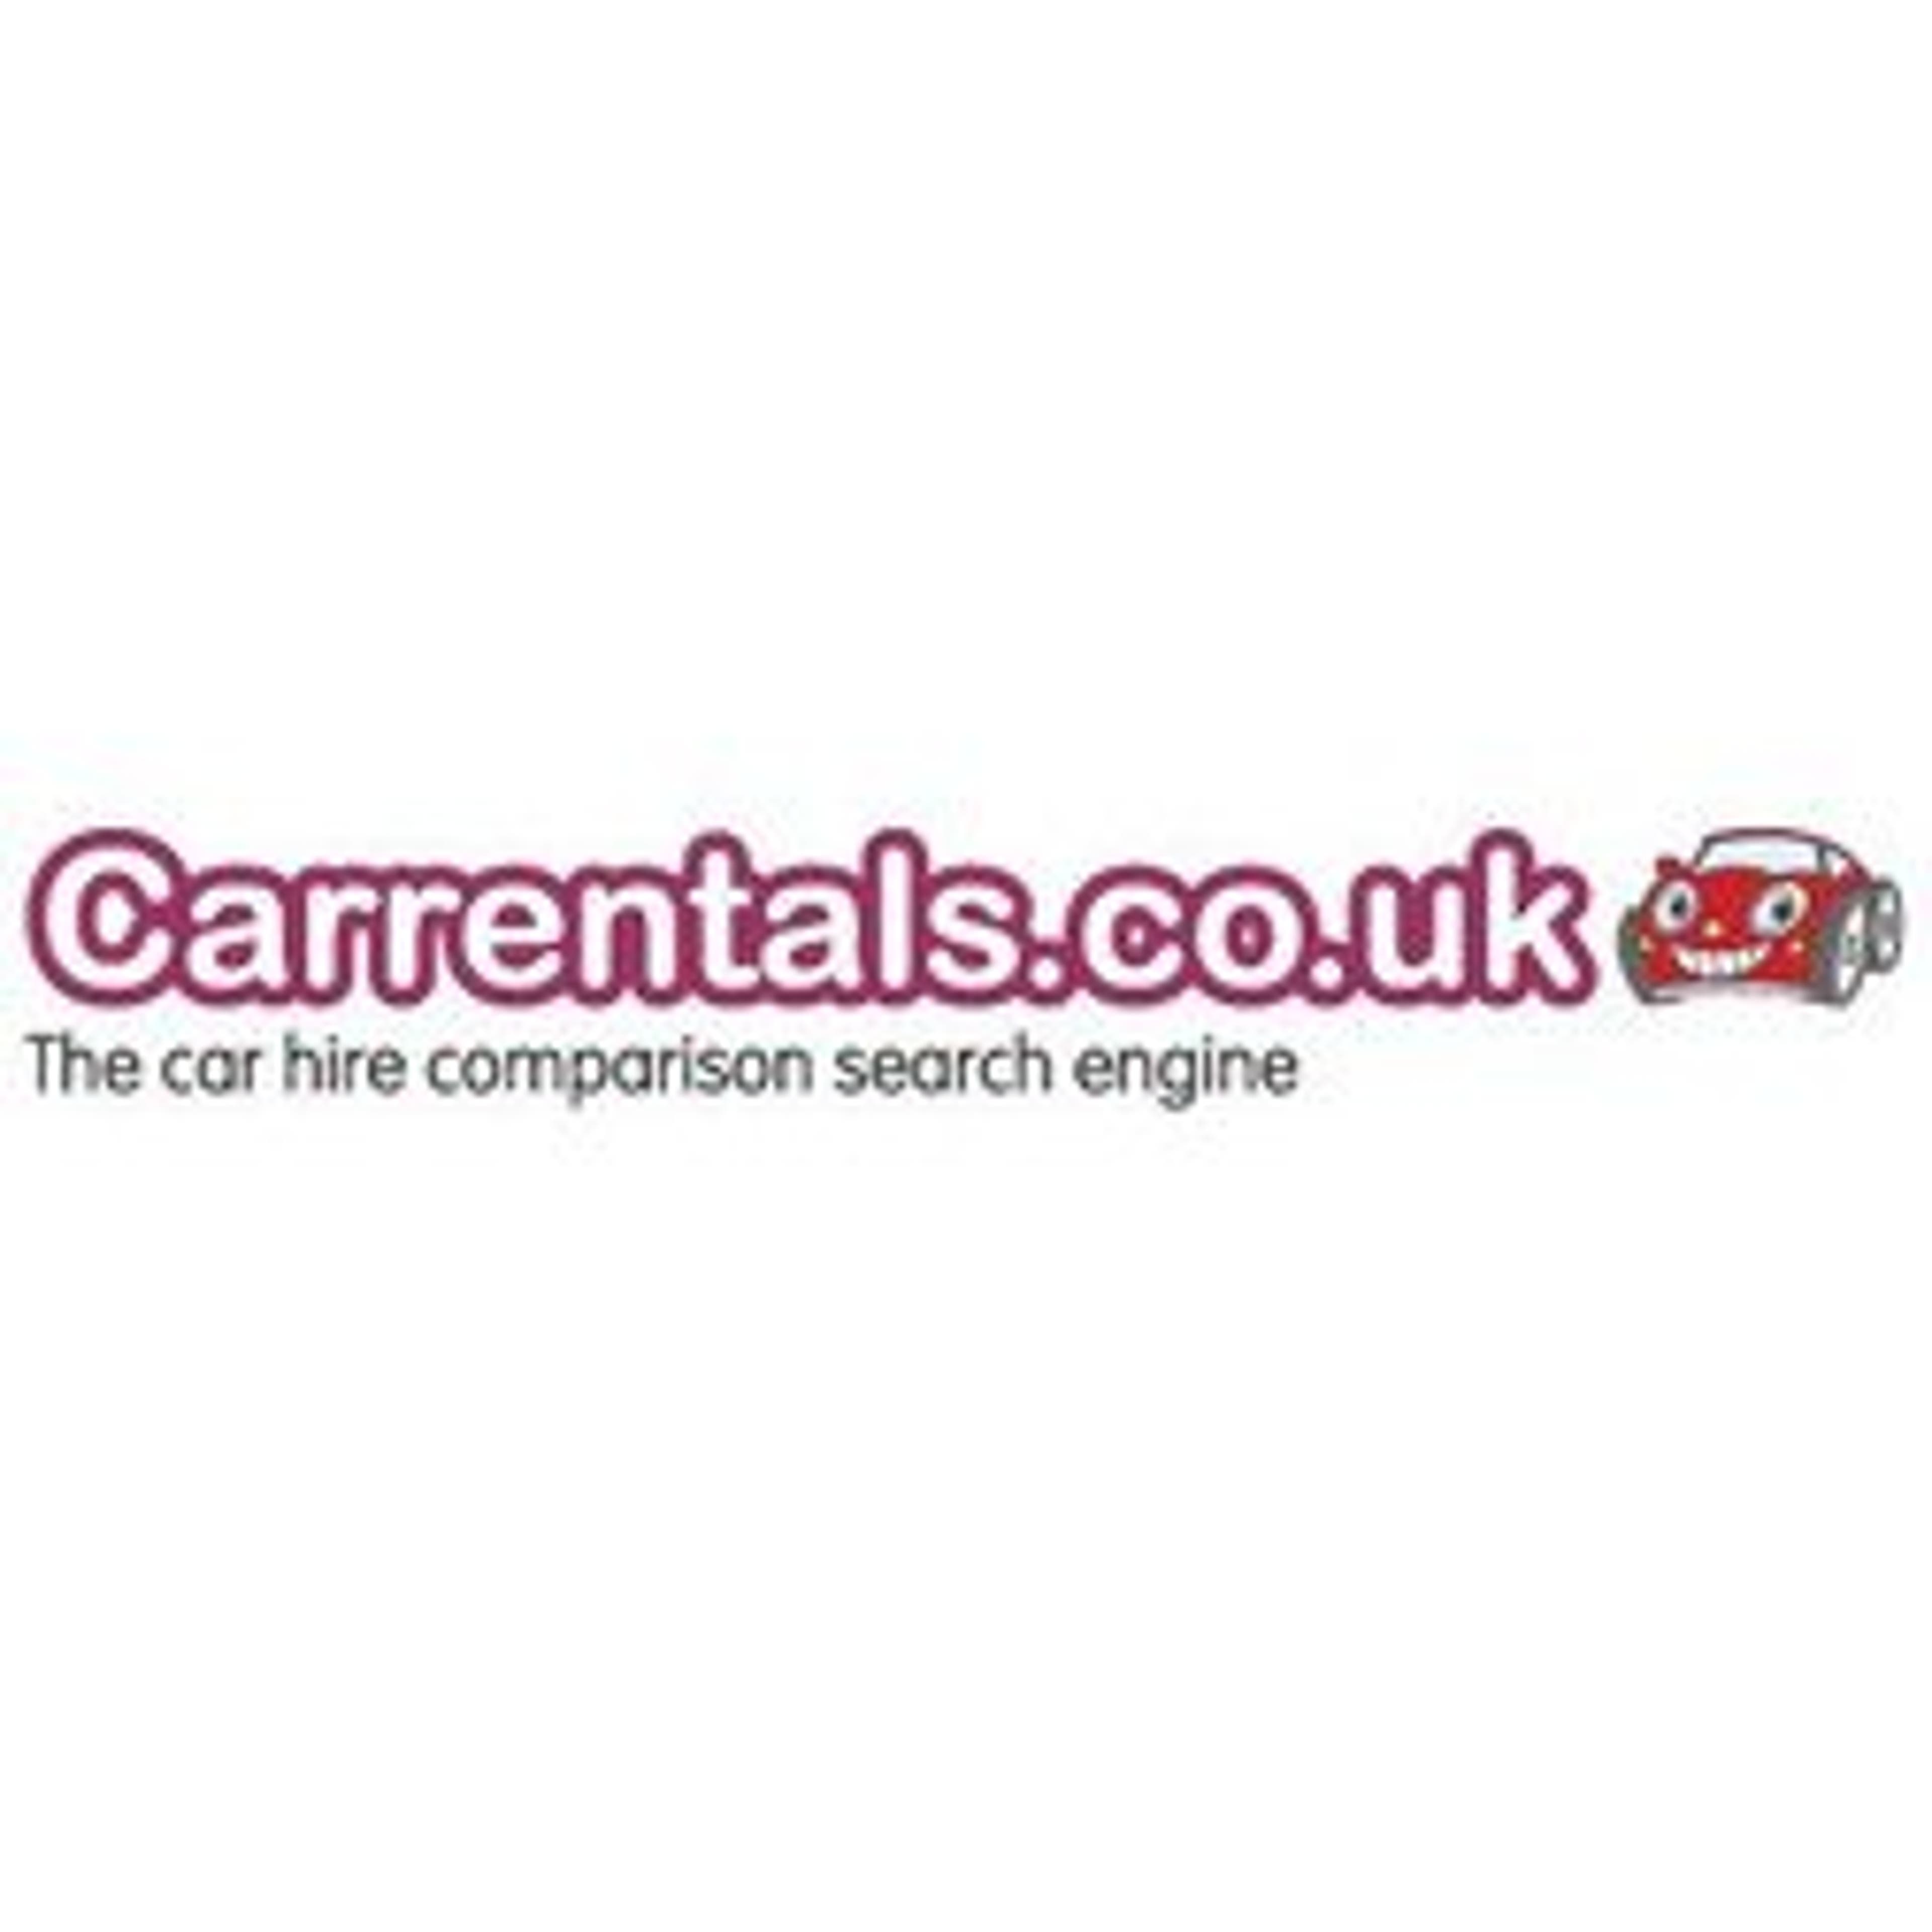  Carrentals.co.uk 